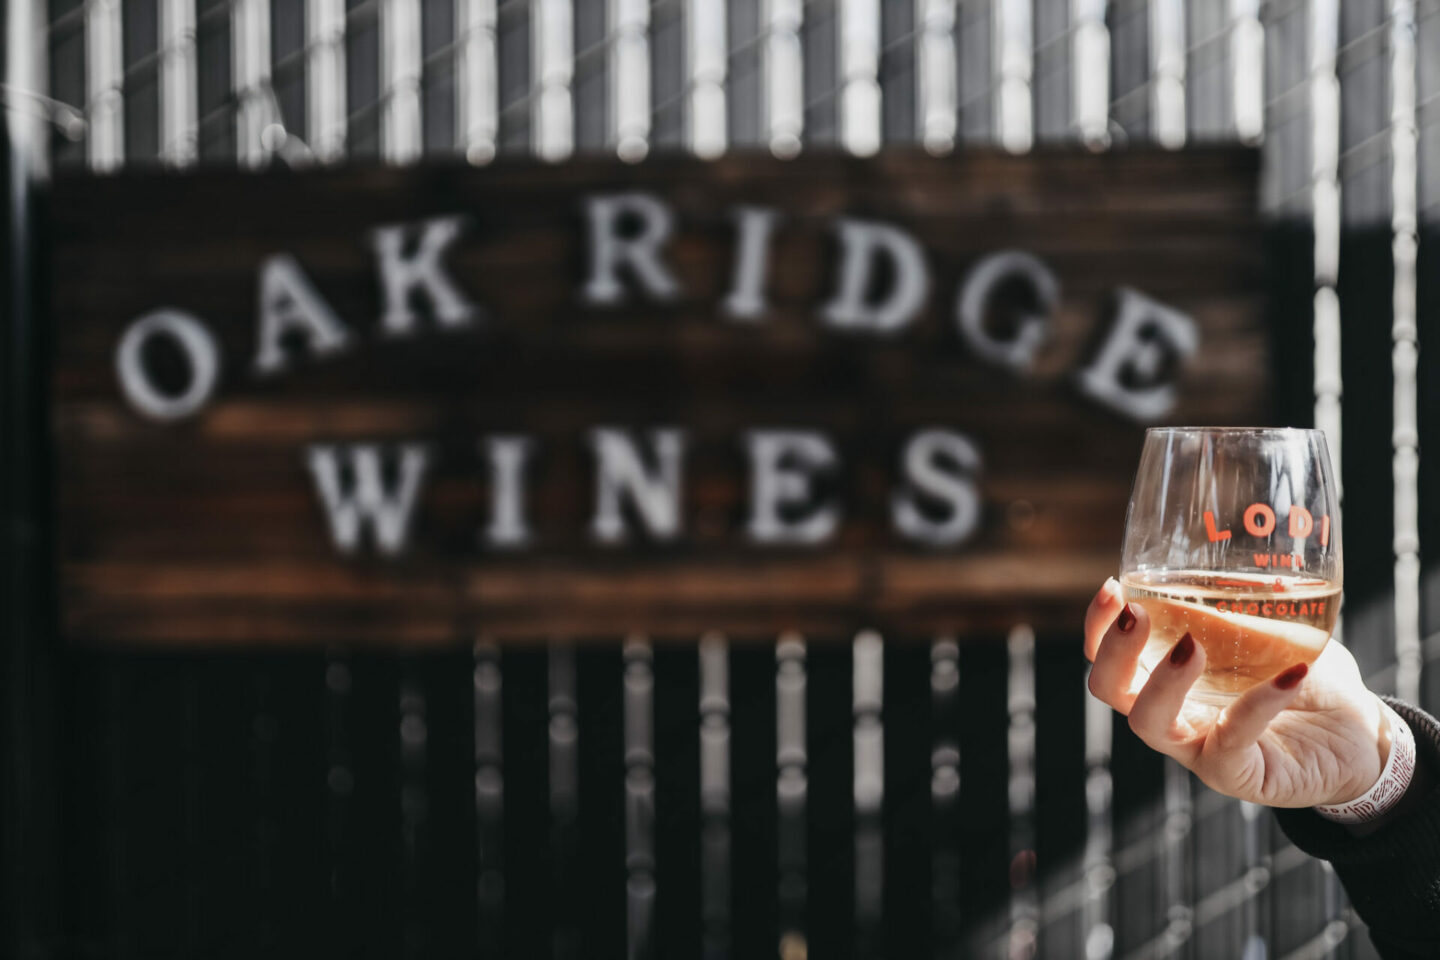 Oak Ridge wines sign